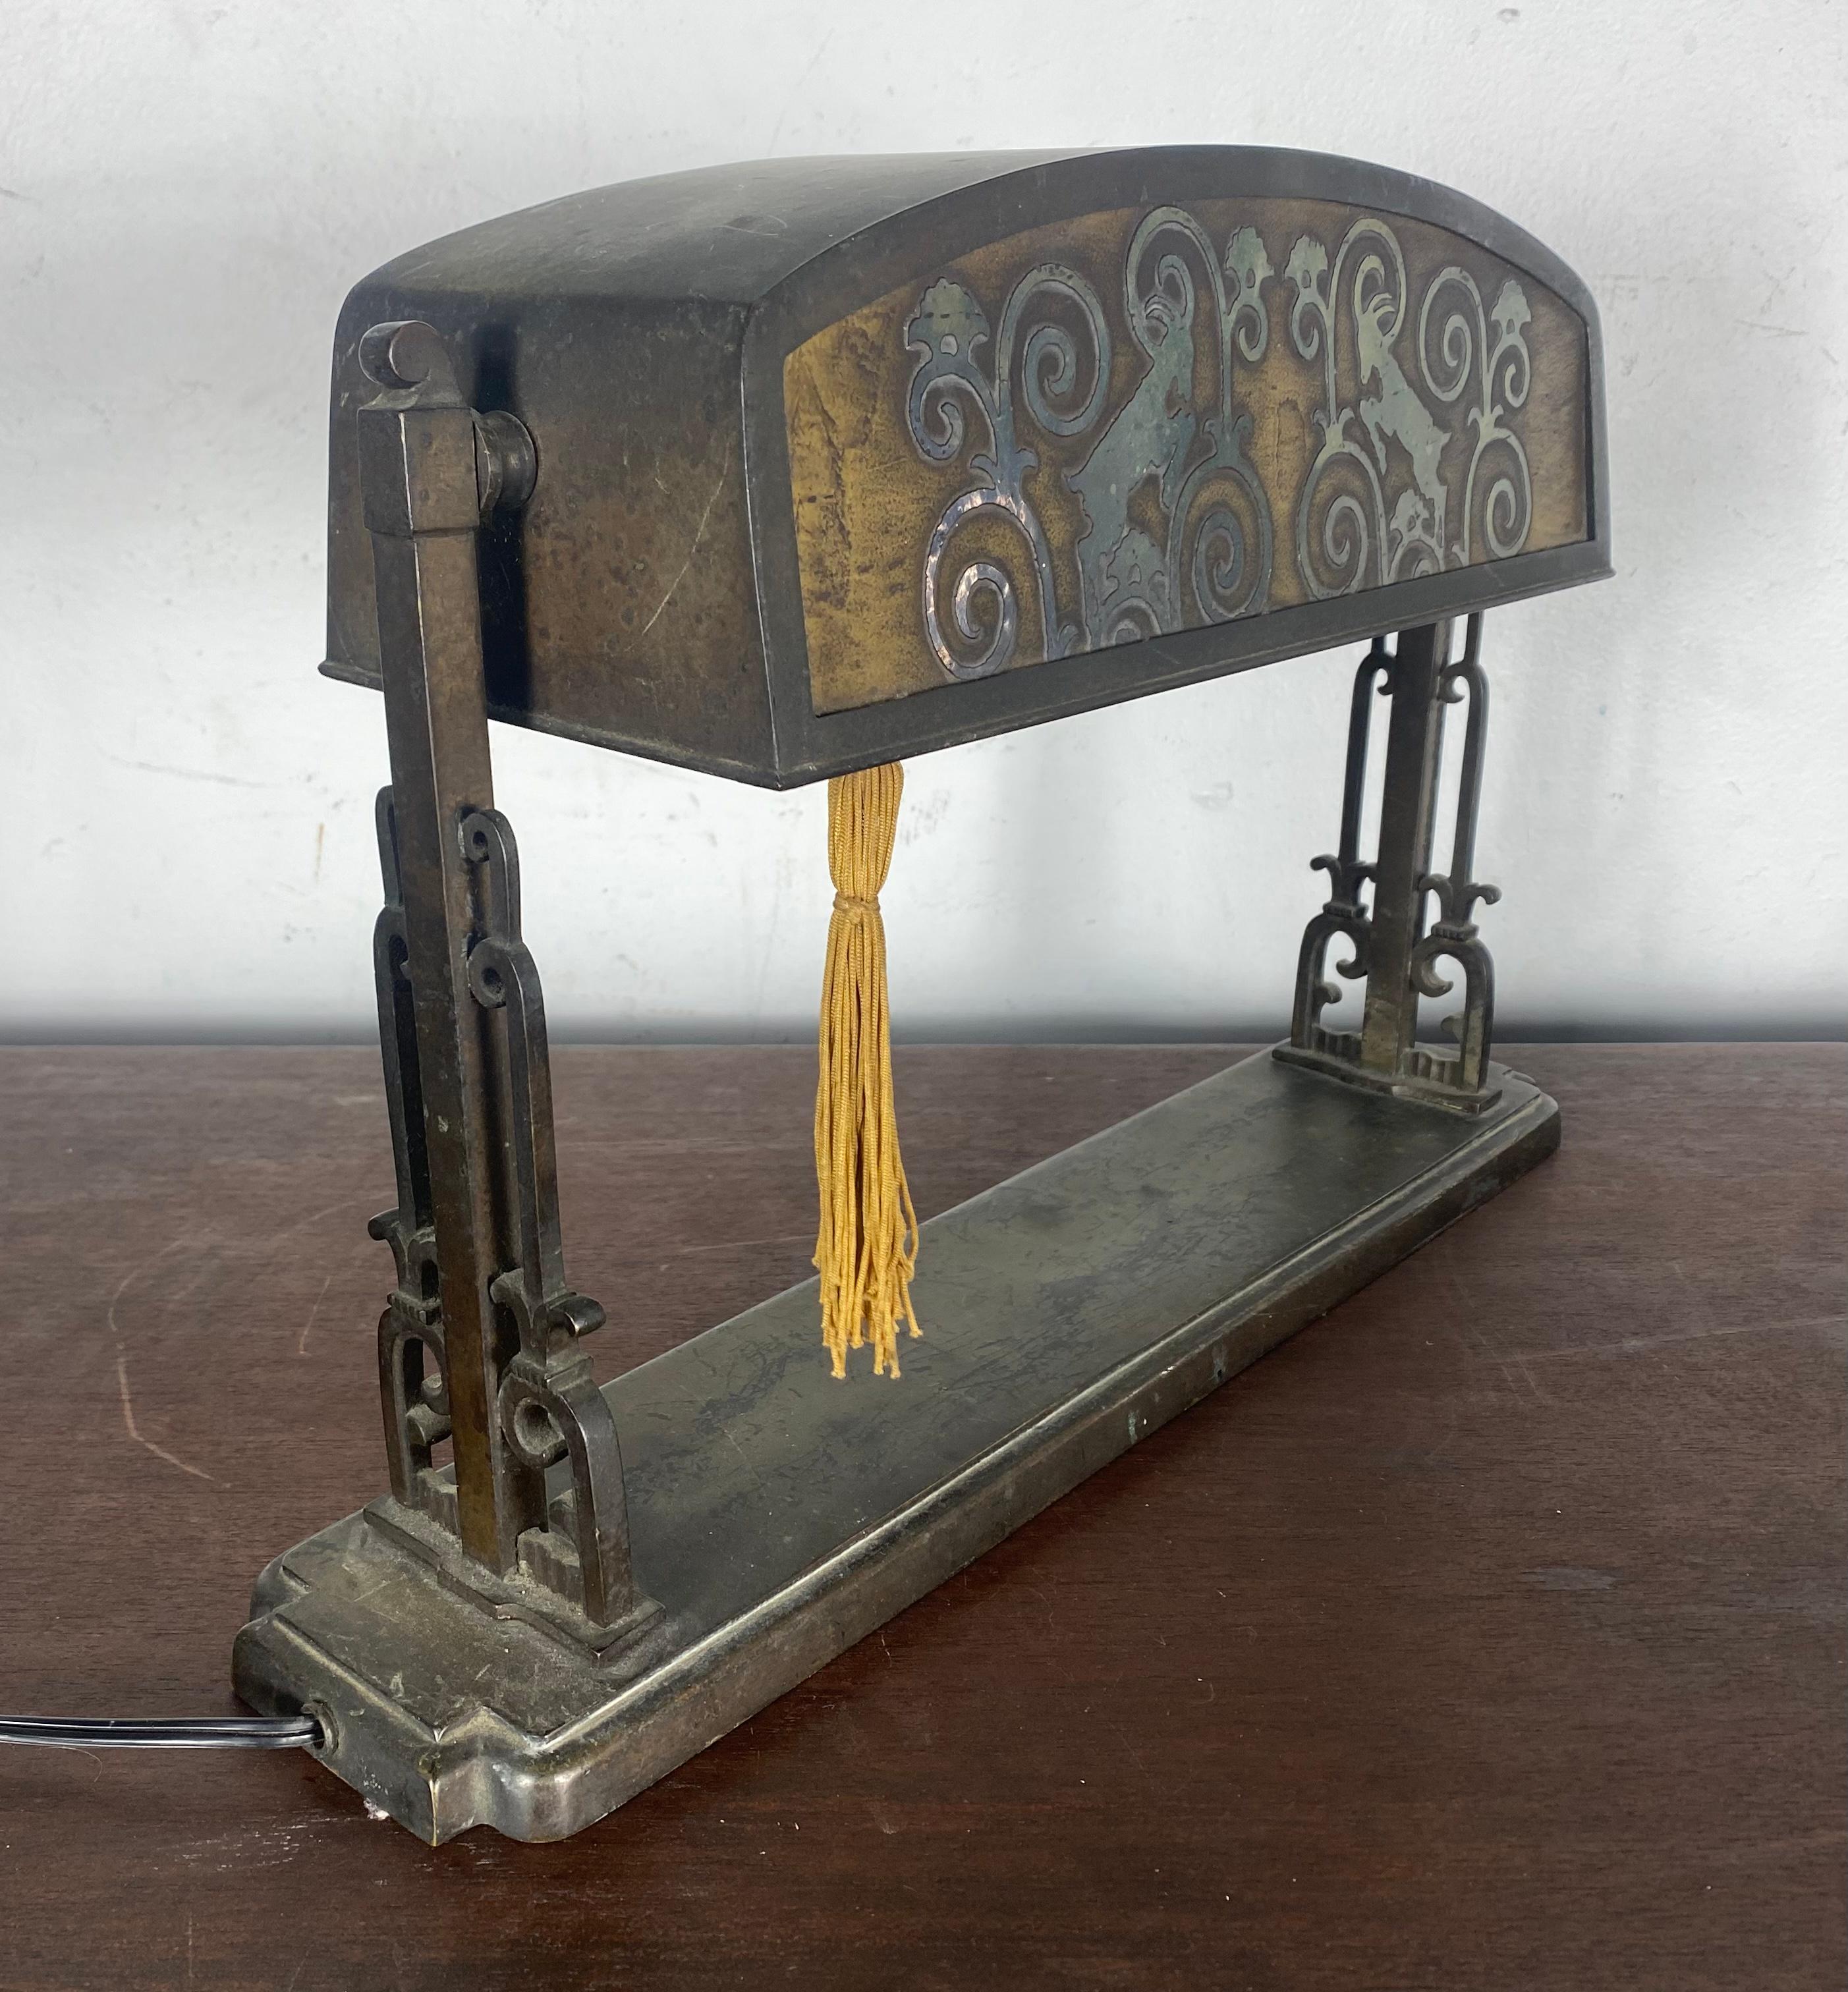 Lampe de table / bureau inhabituelle en bronze et verre gravé à l'acide, étonnant motif de tête de bélier stylisée. Conserve sa patine d'origine. Couleur, surface, également interrupteur original à gland.